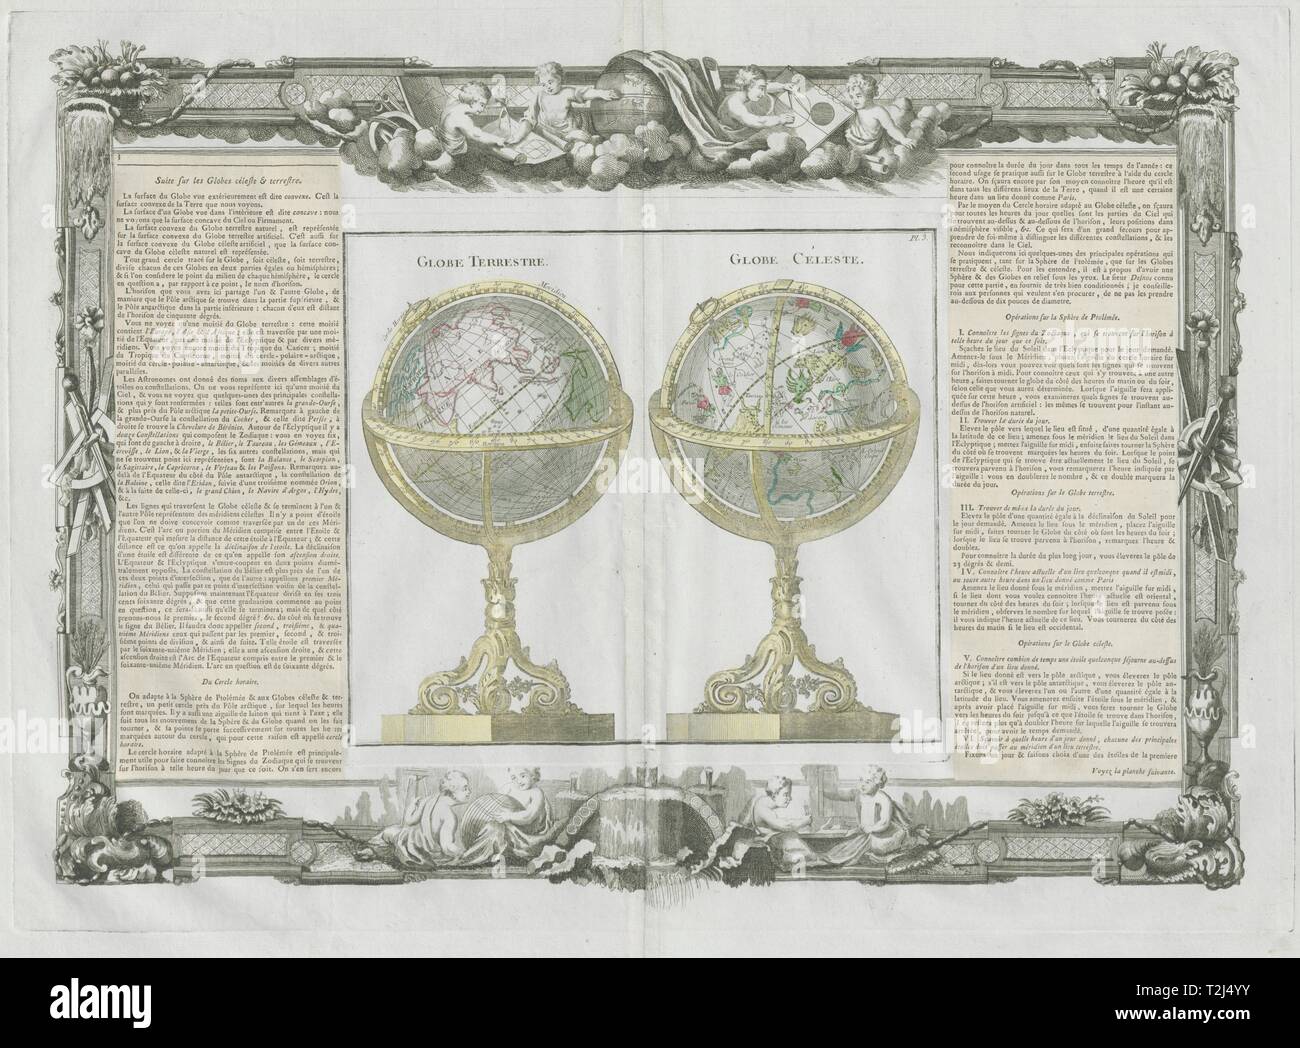 Globe terrestre. Globe Celeste. Céleste terrestre DESNOS/DE LA TOUR 1771 site Banque D'Images